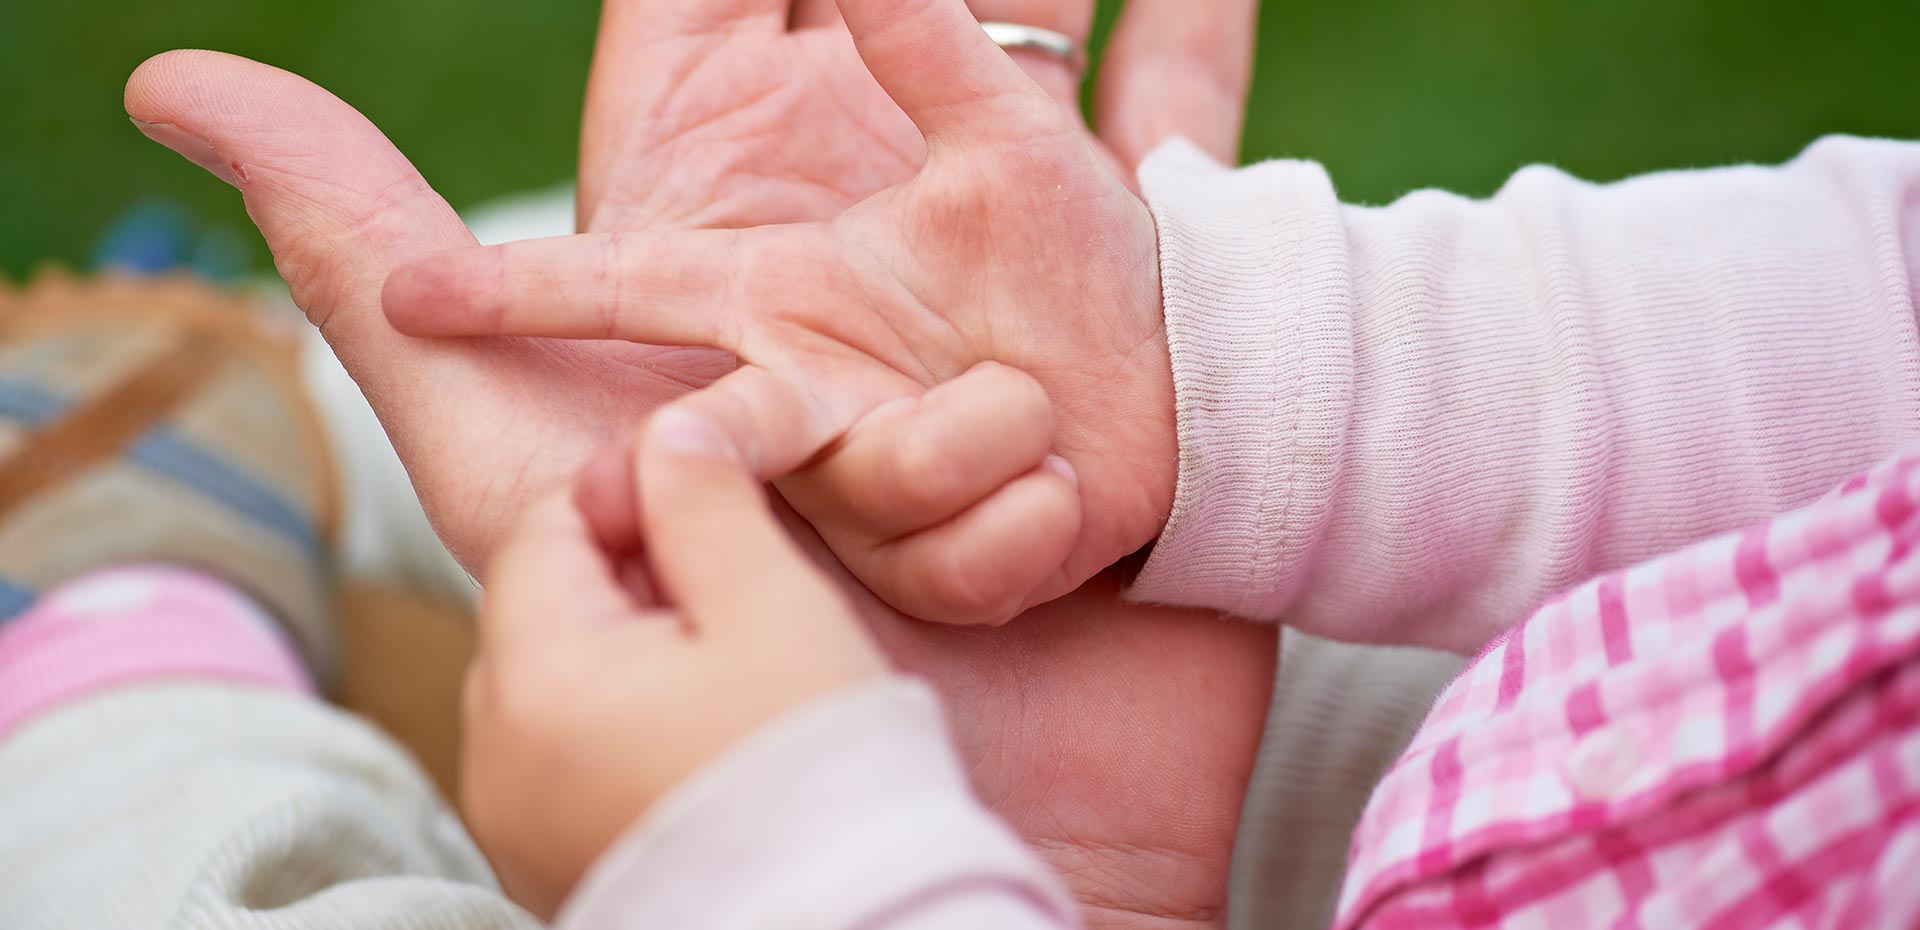 Erwachsenenhand und Kinderhand liegen ineinander, das Kind zählt mit den Fingern